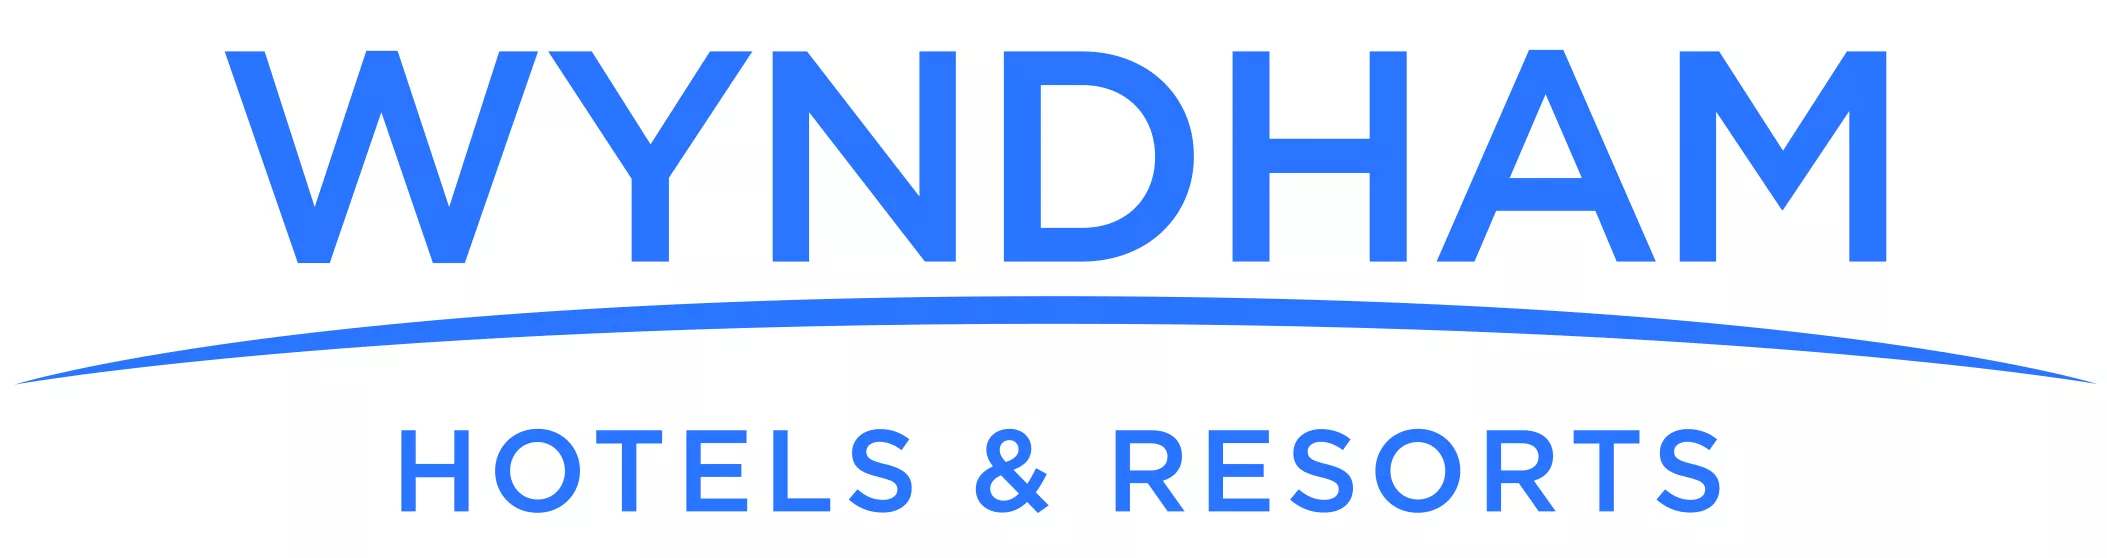 Wyndham logo logo